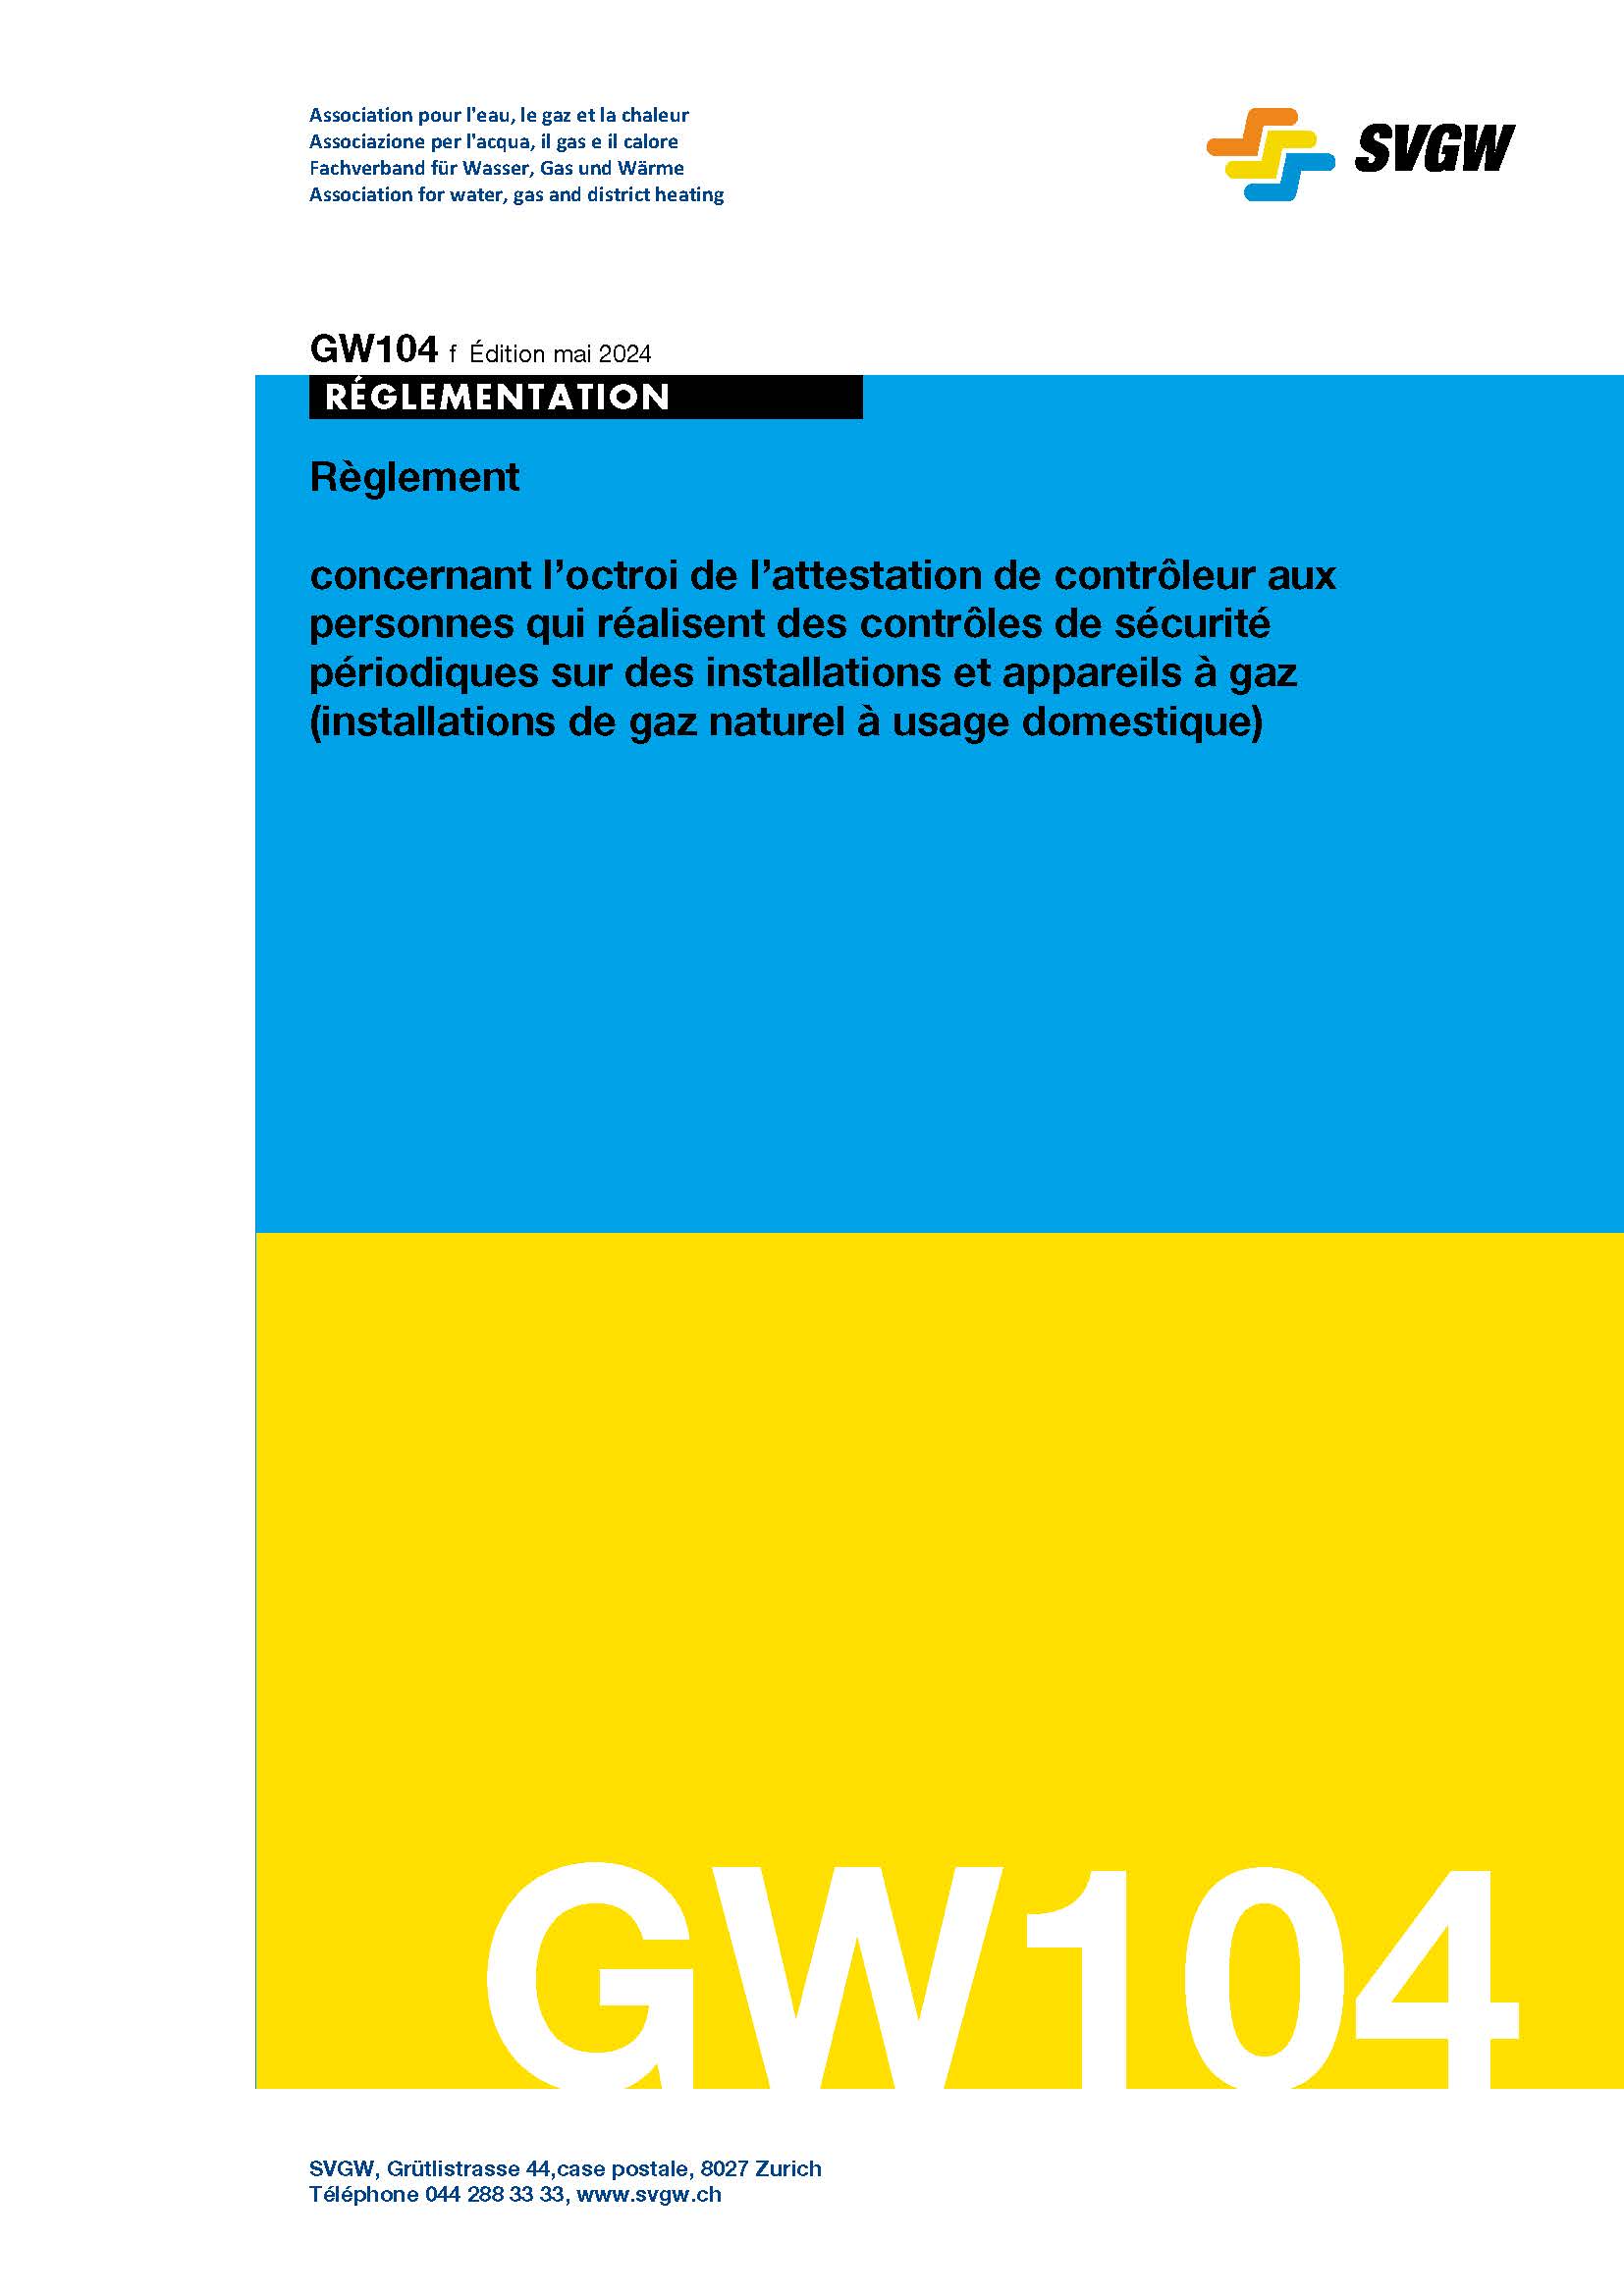 GW104 f Règlement concernant l’octroi de l’attestation de contrôleur aux personnes qui réalisent des contrôles de sécurité périodiques sur des installations et appareils à gaz